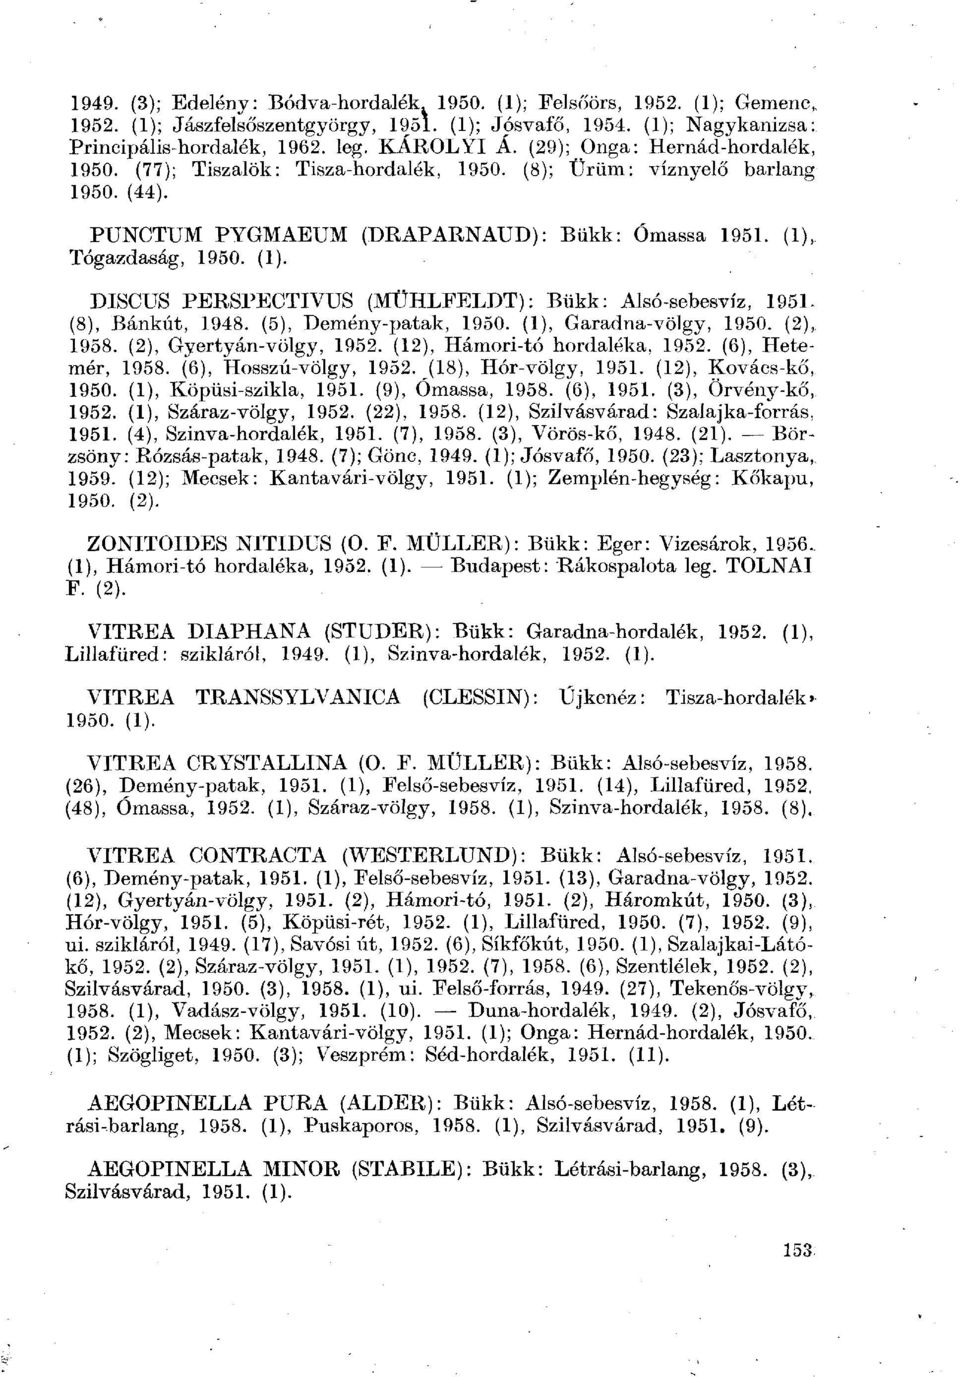 Tógazdaság, 1950. (1). DISCUS PERSPECTIVUS (MÜHLFELDT): Bükk: Alsó-sebesvíz, 1951. (8), Bánkút, 1948. (5), Demény-patak, 1950. (1), Garadna-völgy, 1950. (2), 1958. (2), Gyertyán-völgy, 1952.